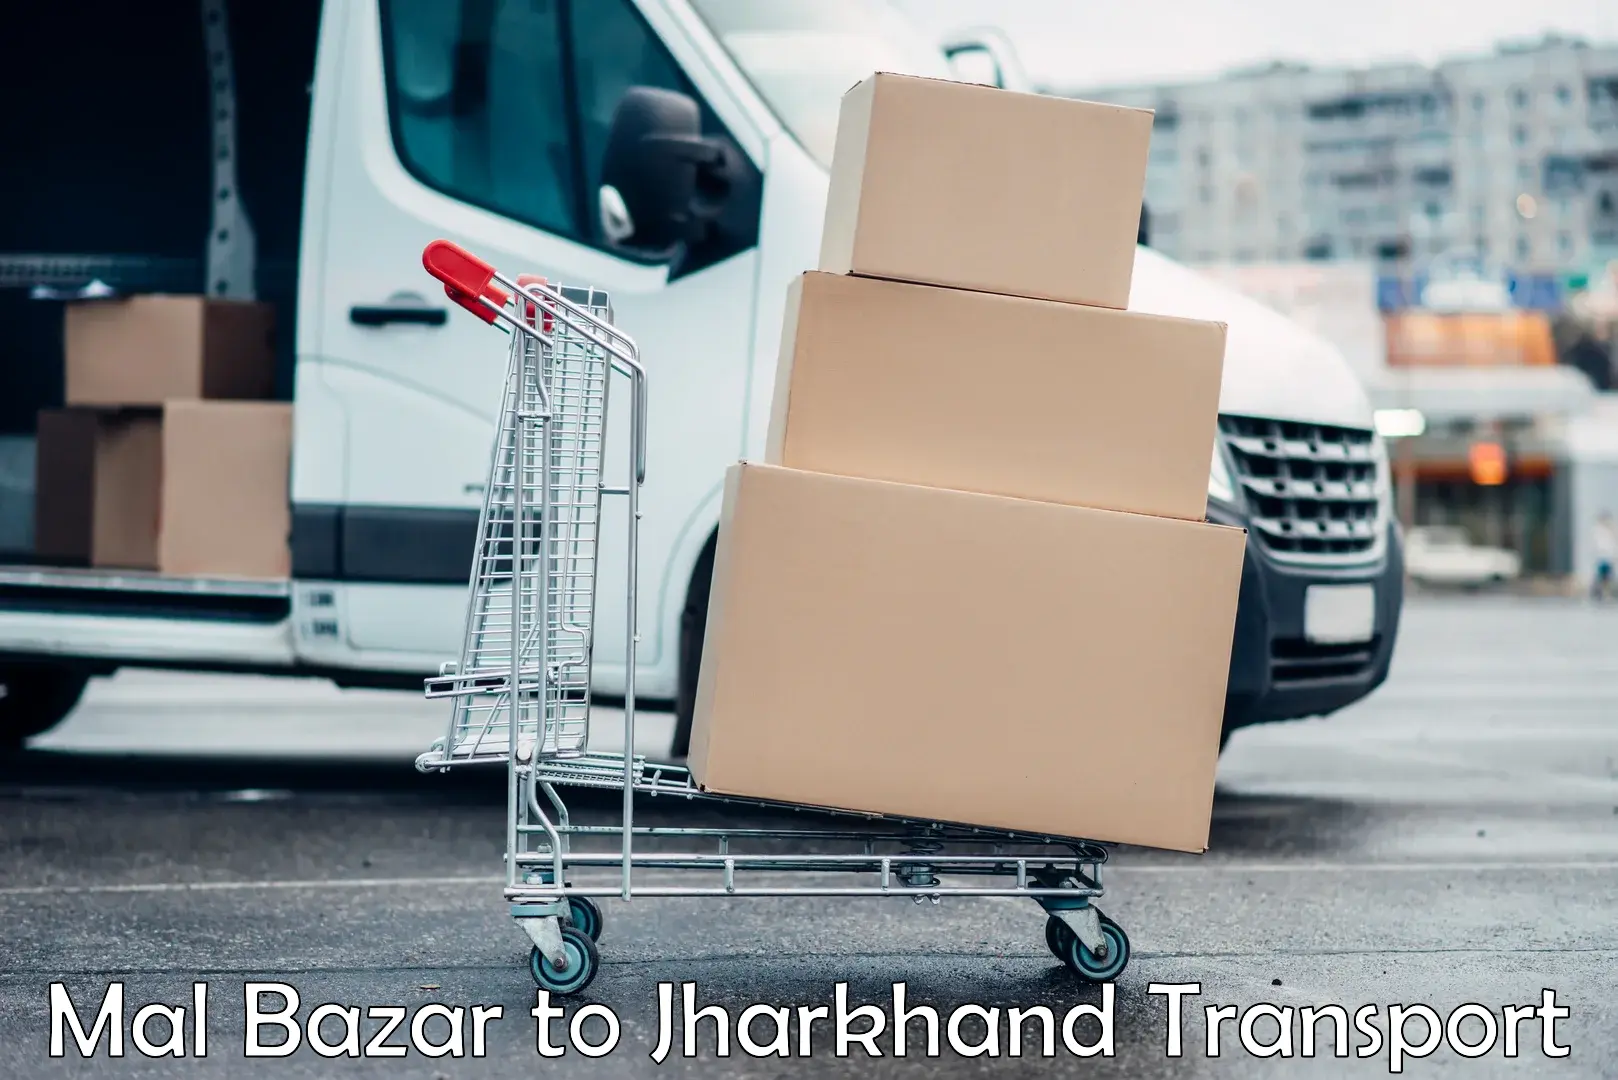 Furniture transport service Mal Bazar to Jamshedpur